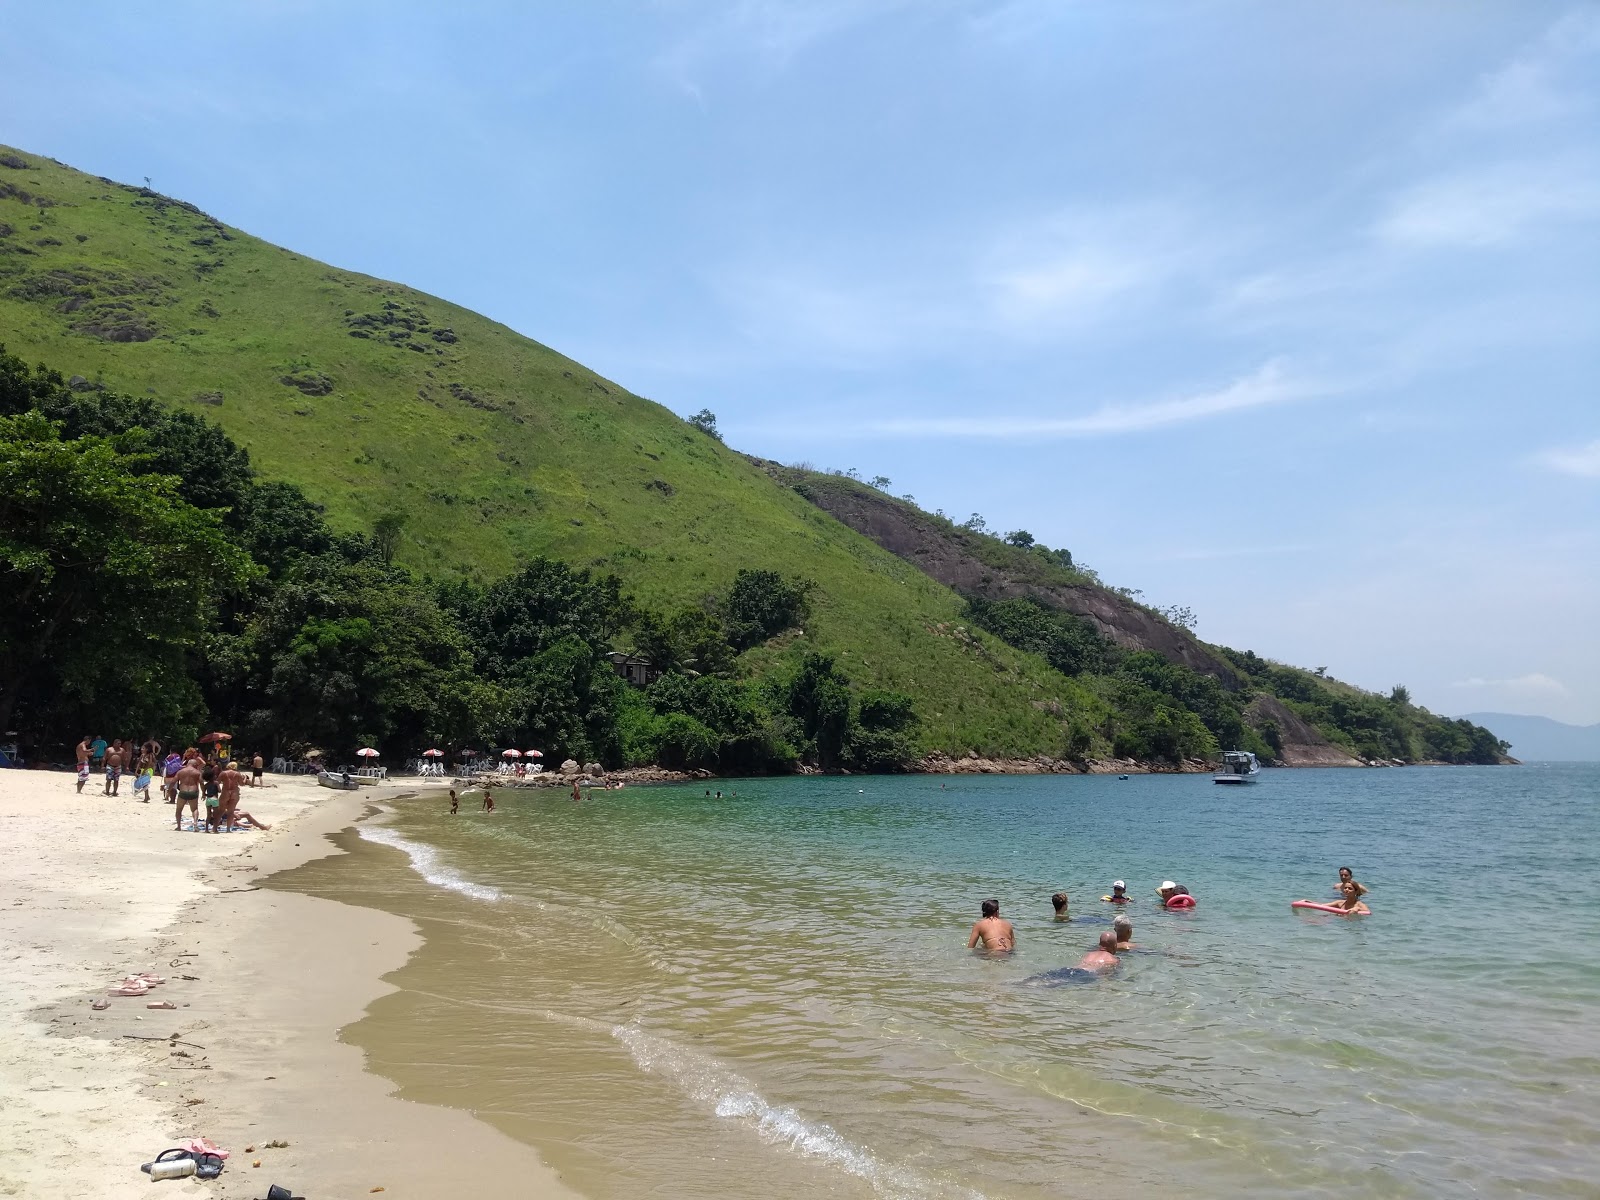 Sororoca Plajı'in fotoğrafı parlak kum yüzey ile